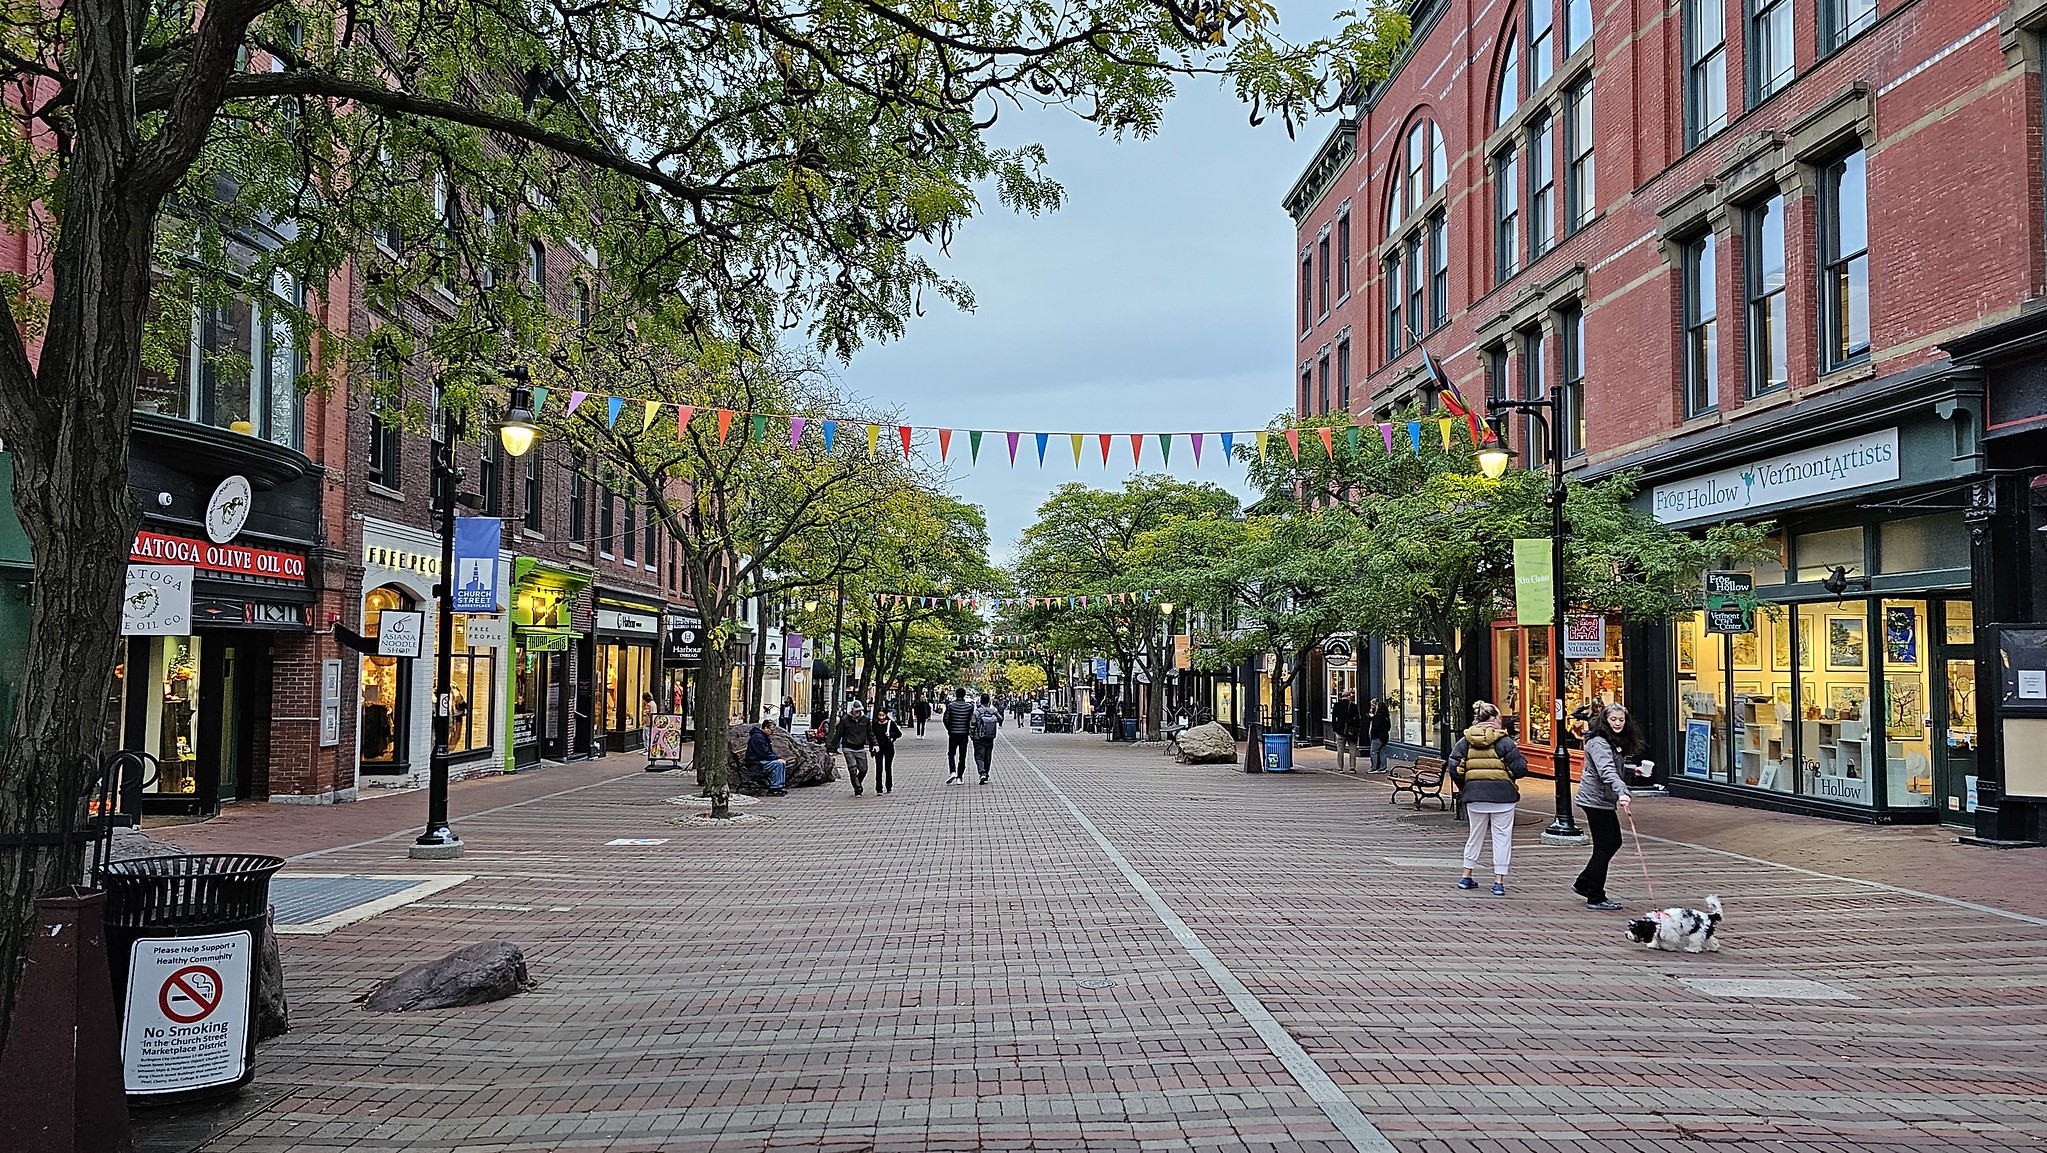 The pedestrian area in Burlington